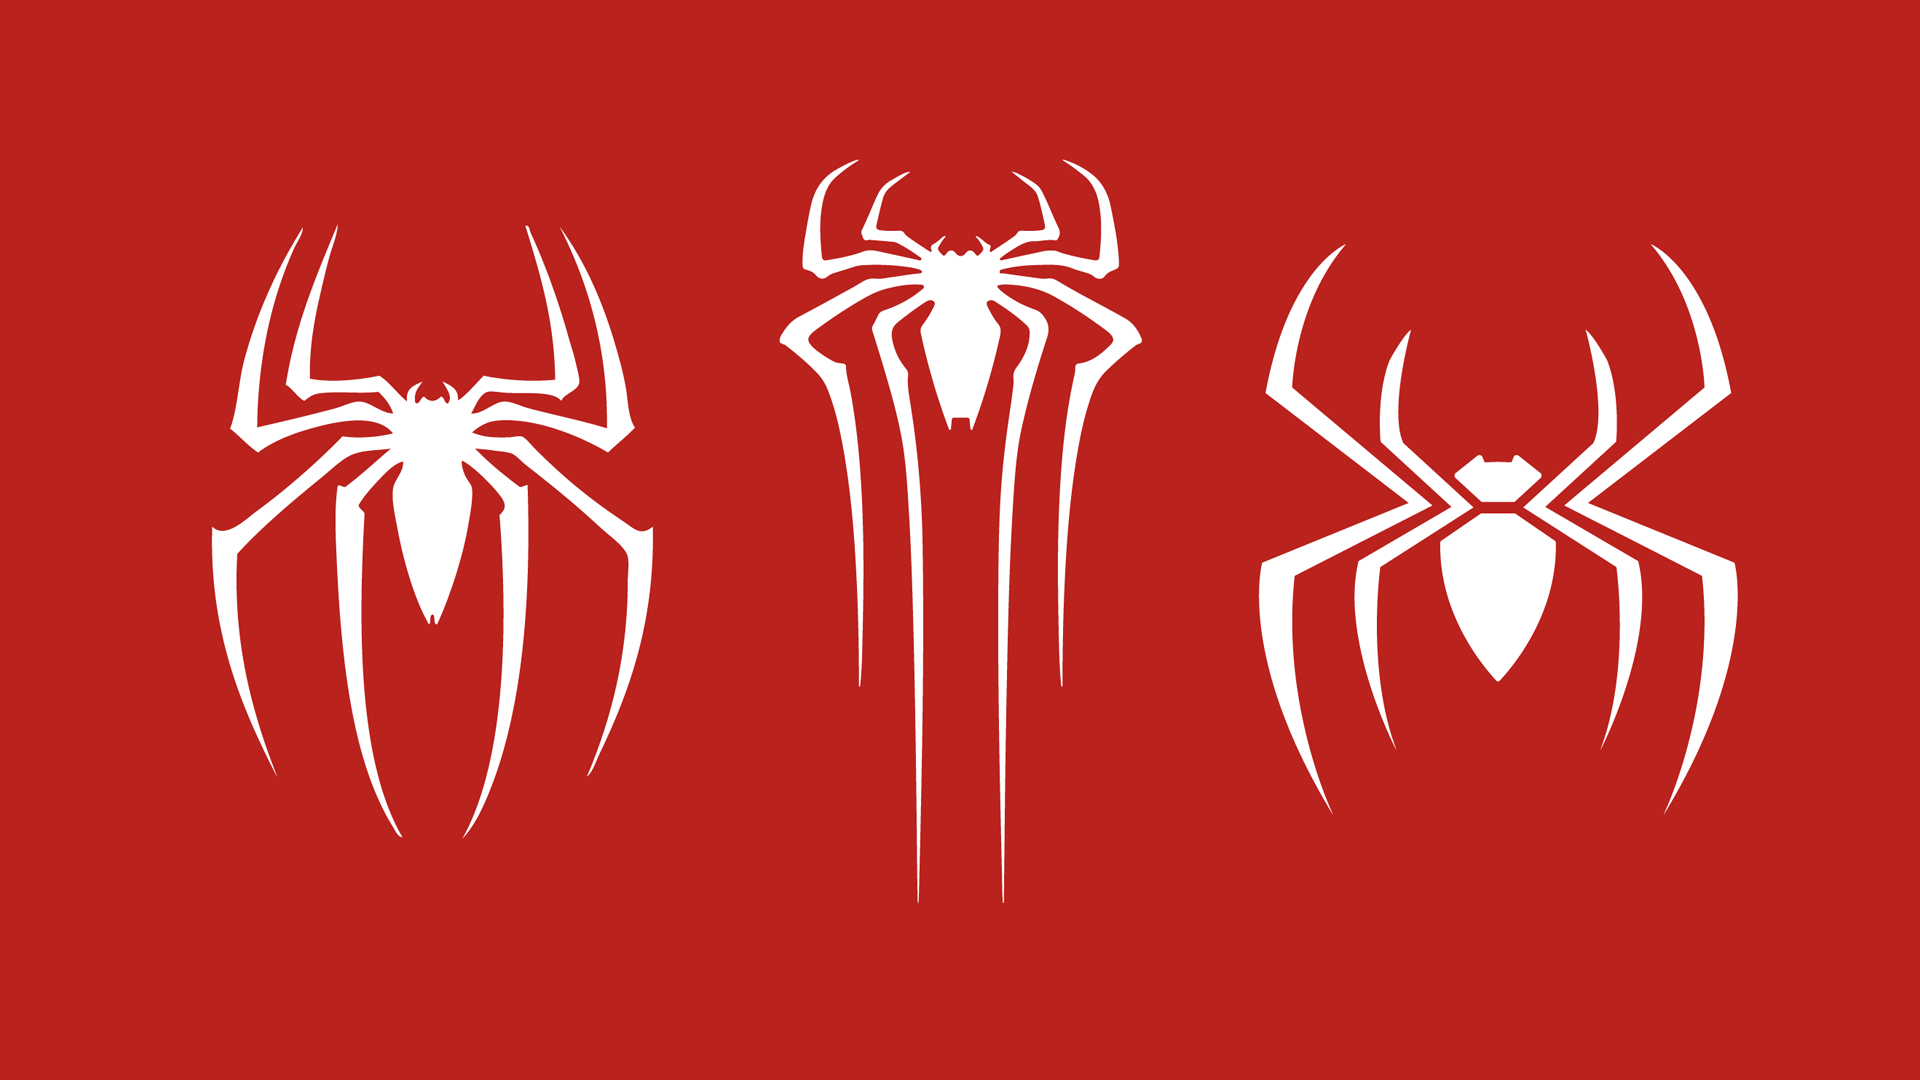 Spiderman Spider Logos - Infoupdate.org